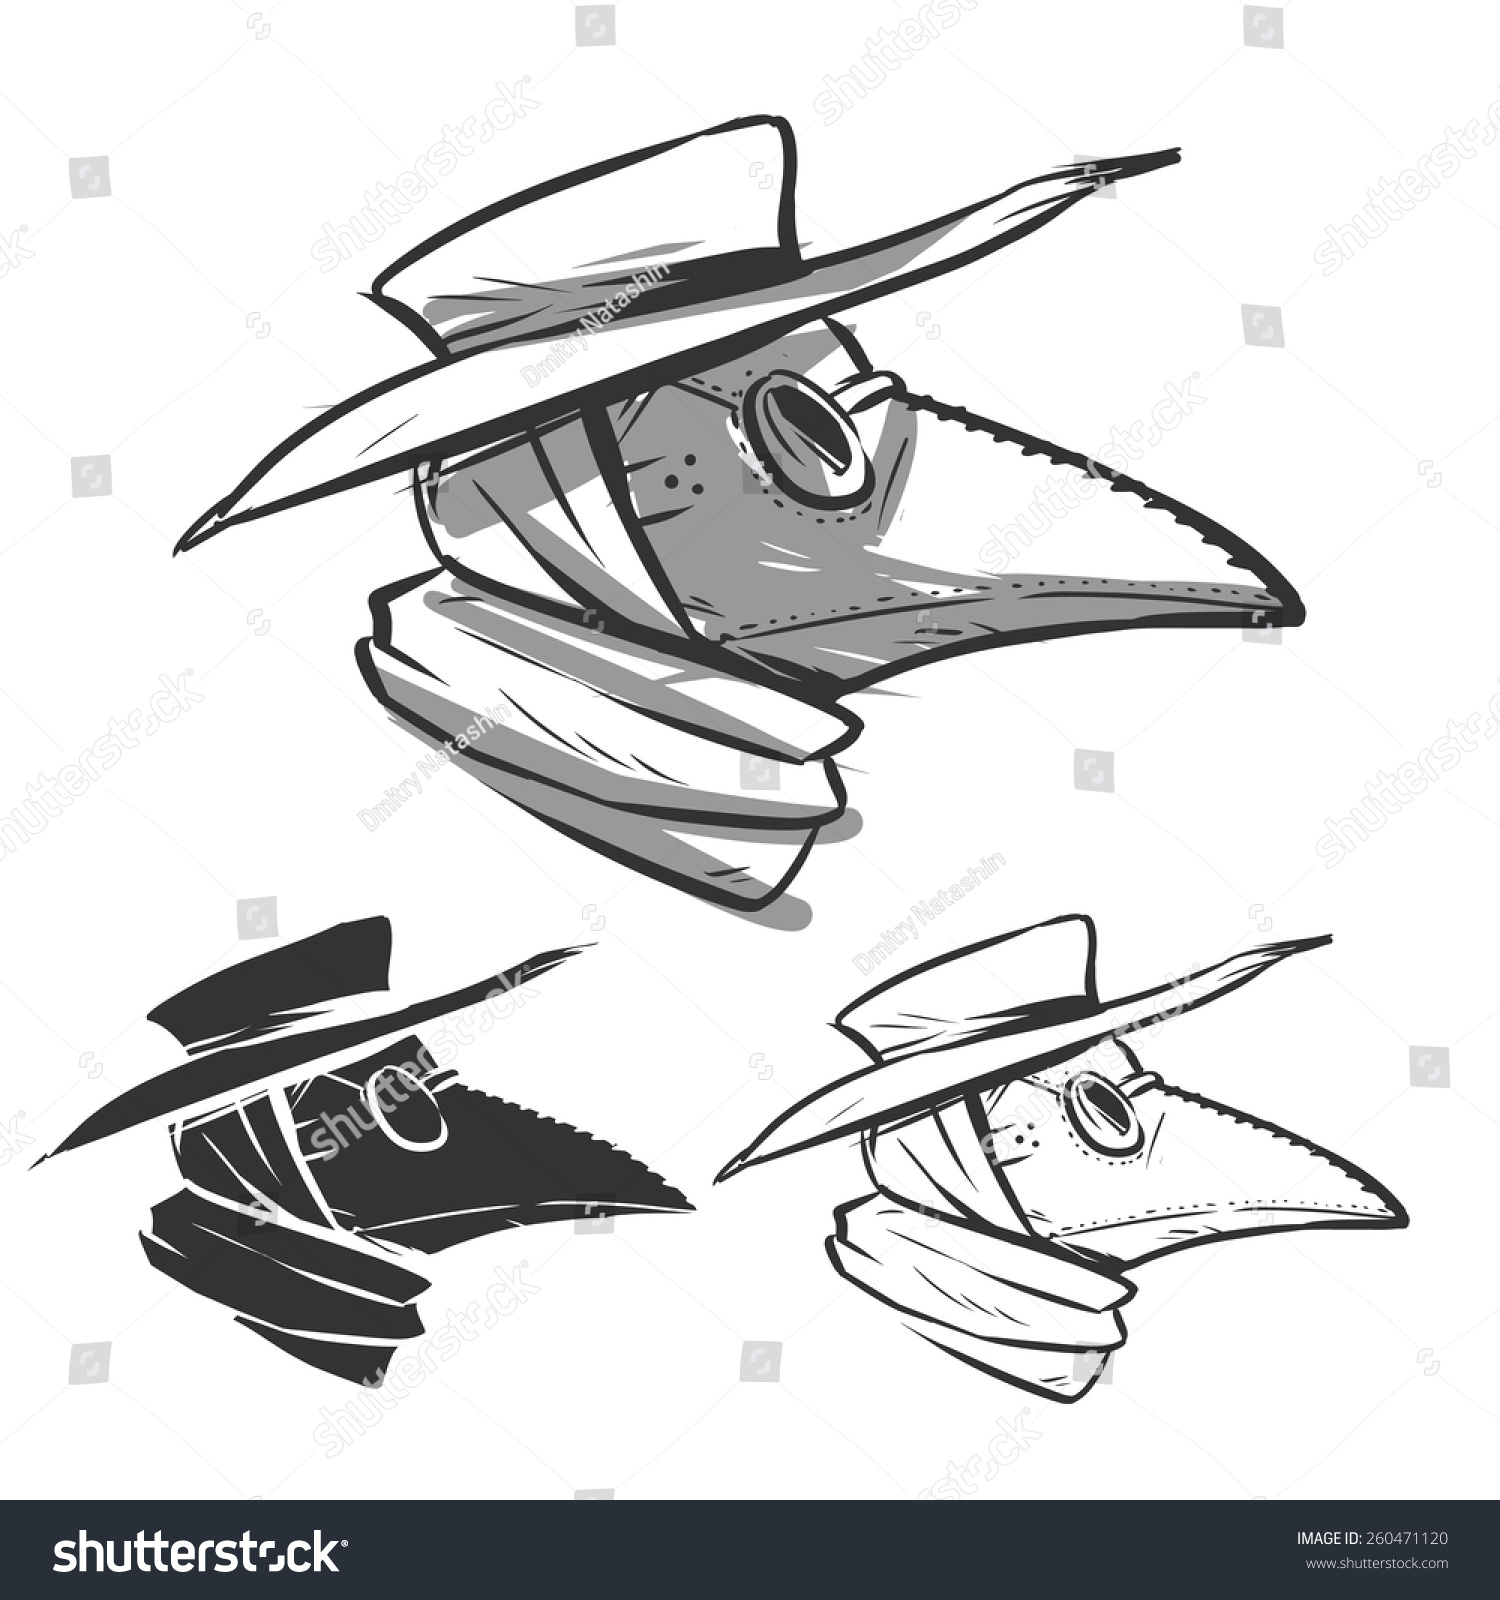 SVG of plague doctor mask profile svg